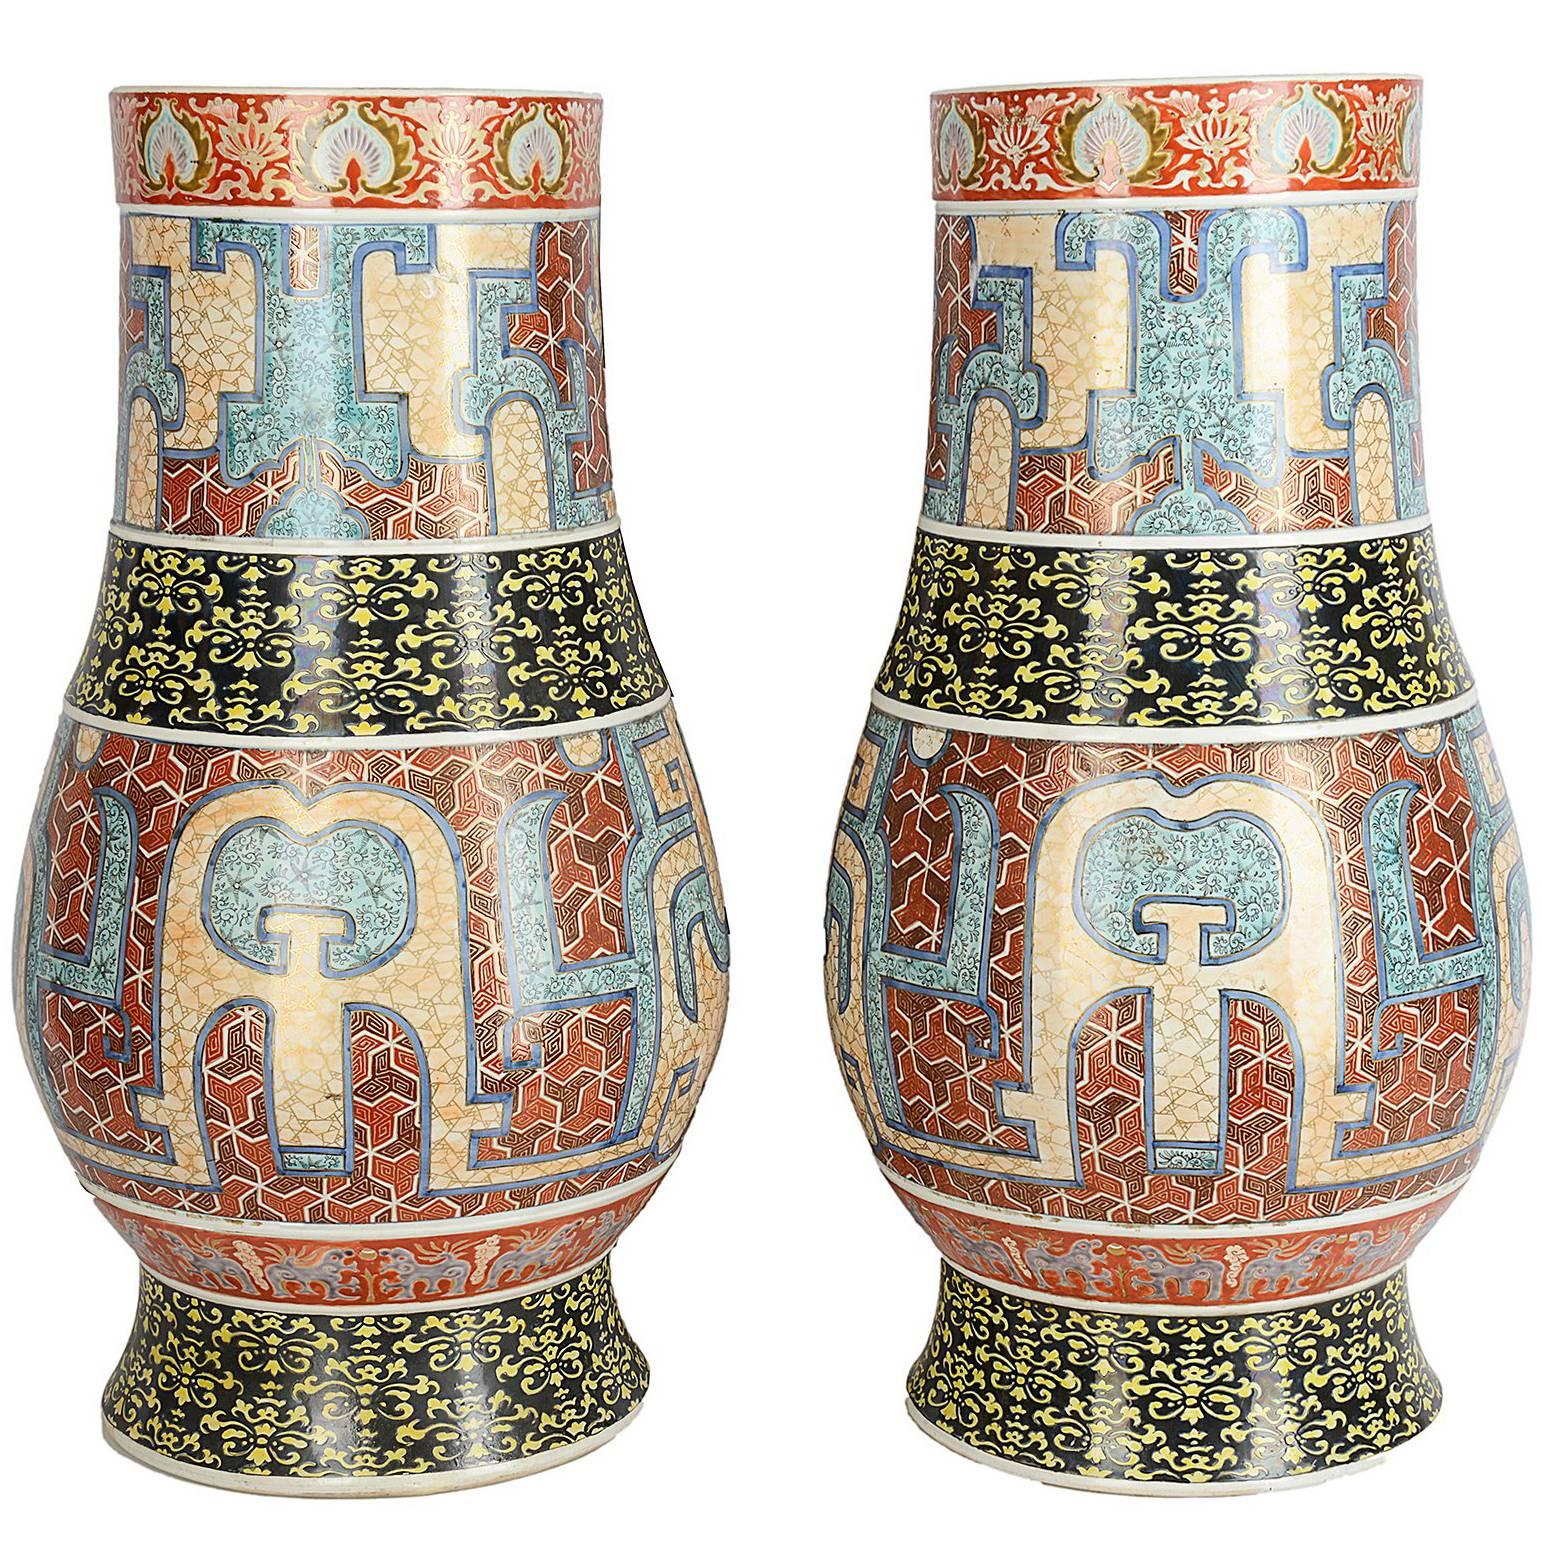 Large Pair of 19th Century Imari Vases